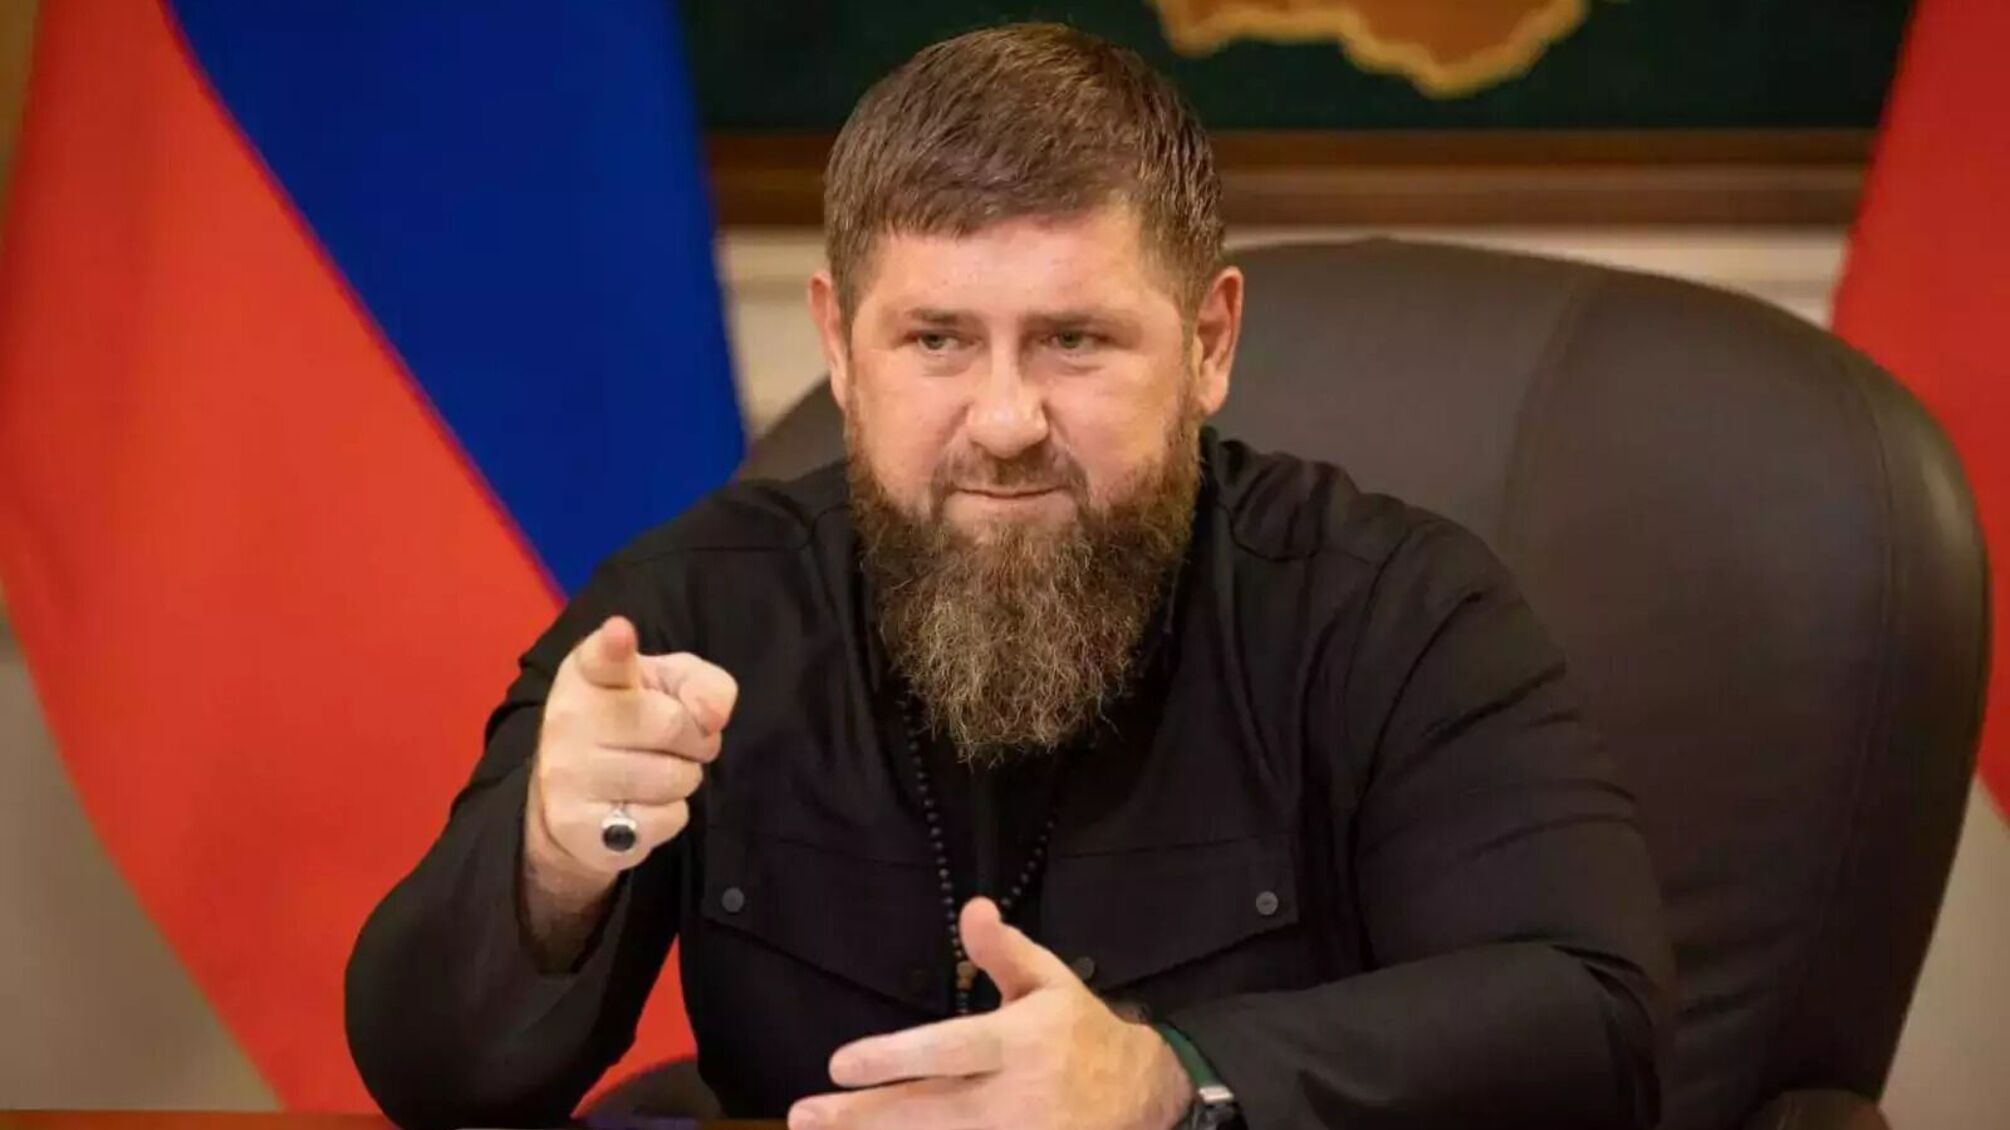 Кадыров начал угрожать Польше вторжением: детали скандала